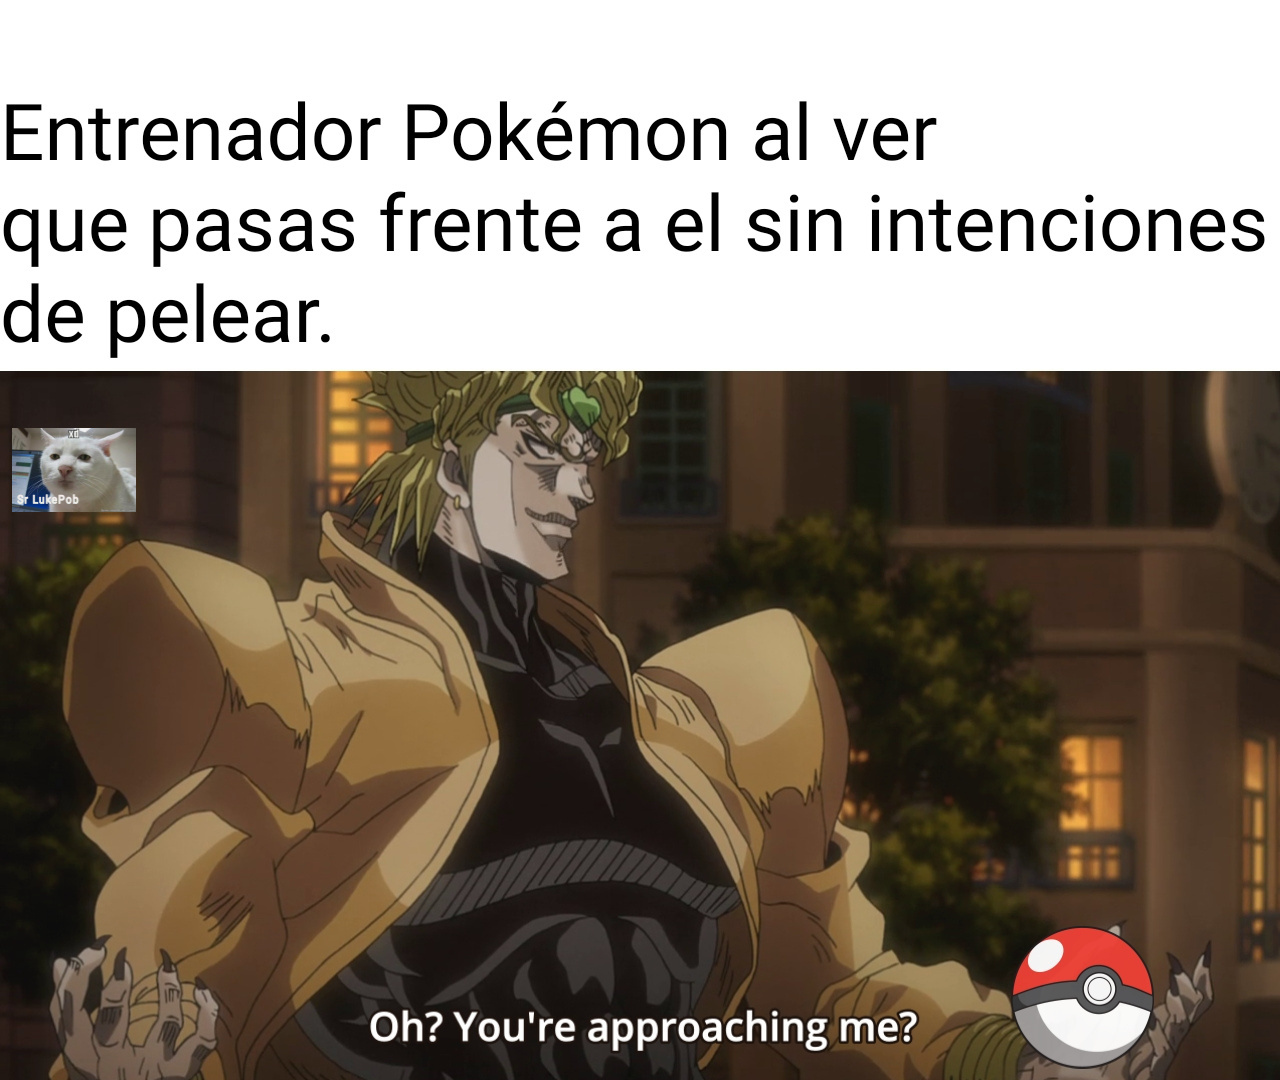 El con un Pokémon inicial y tu con tu lucario - meme